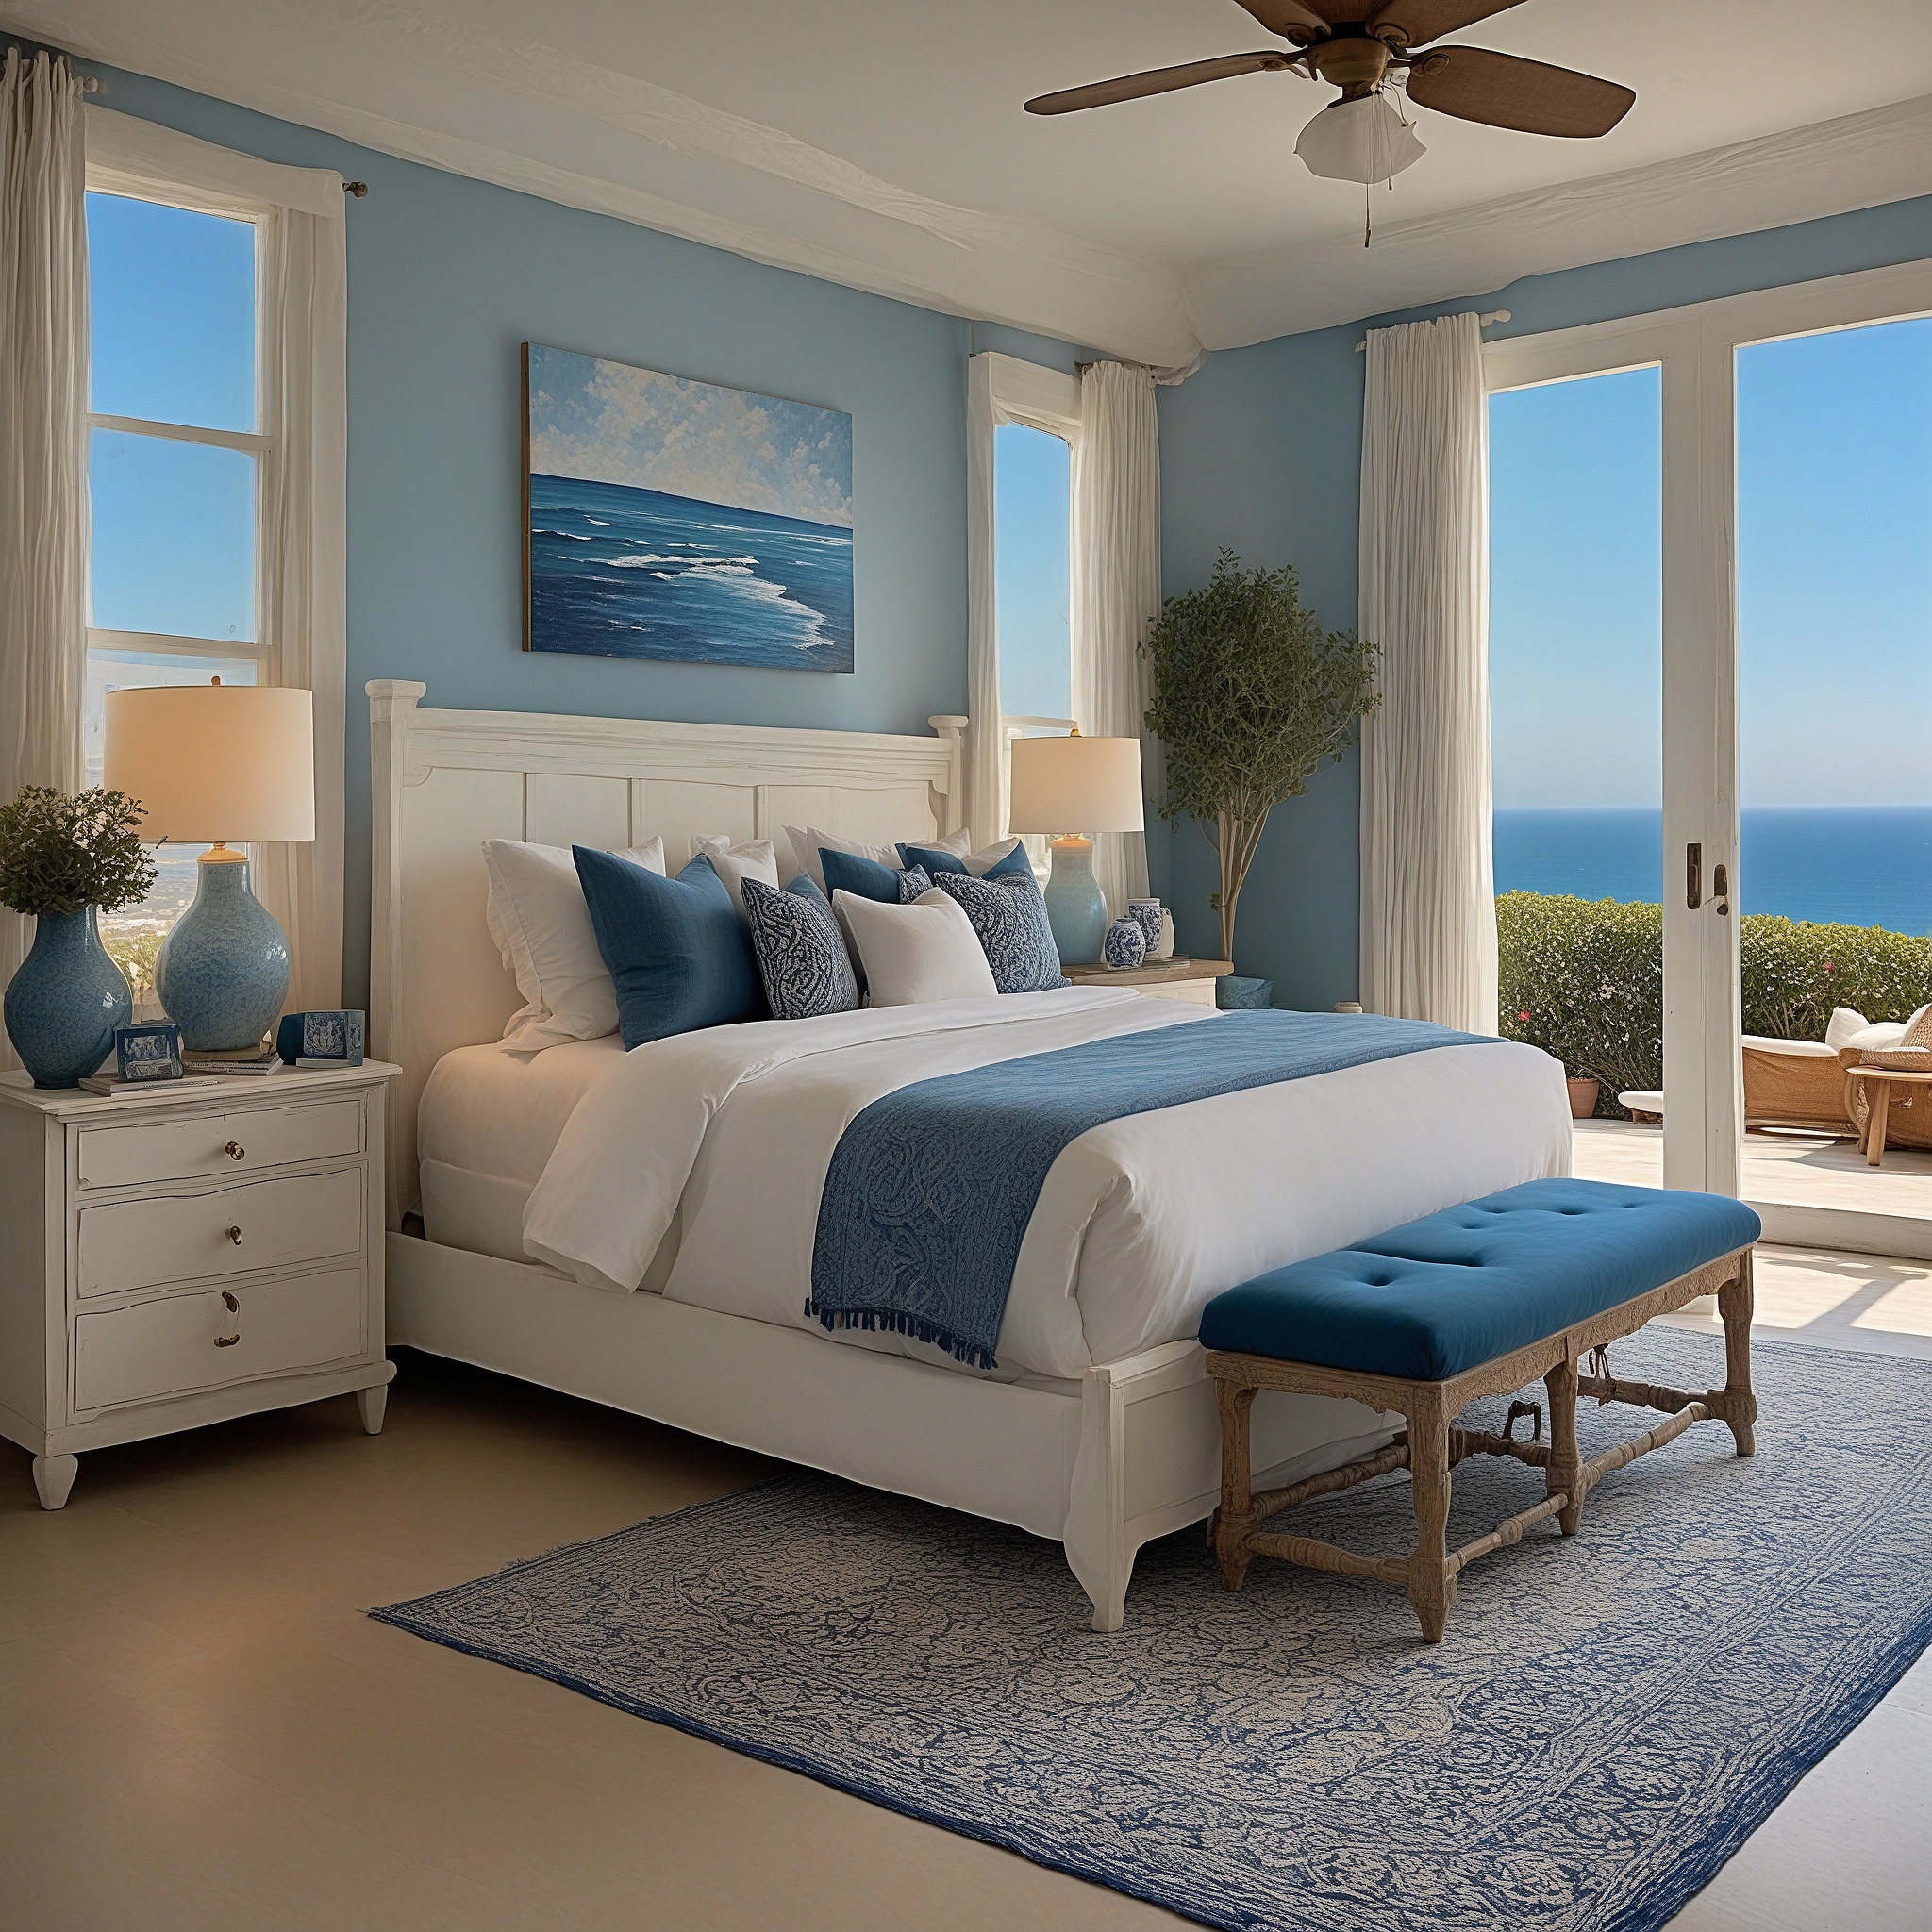 Coastal Luxury Master Bedroom With Whitewashed Furniture, Nautical Decor, King-sized